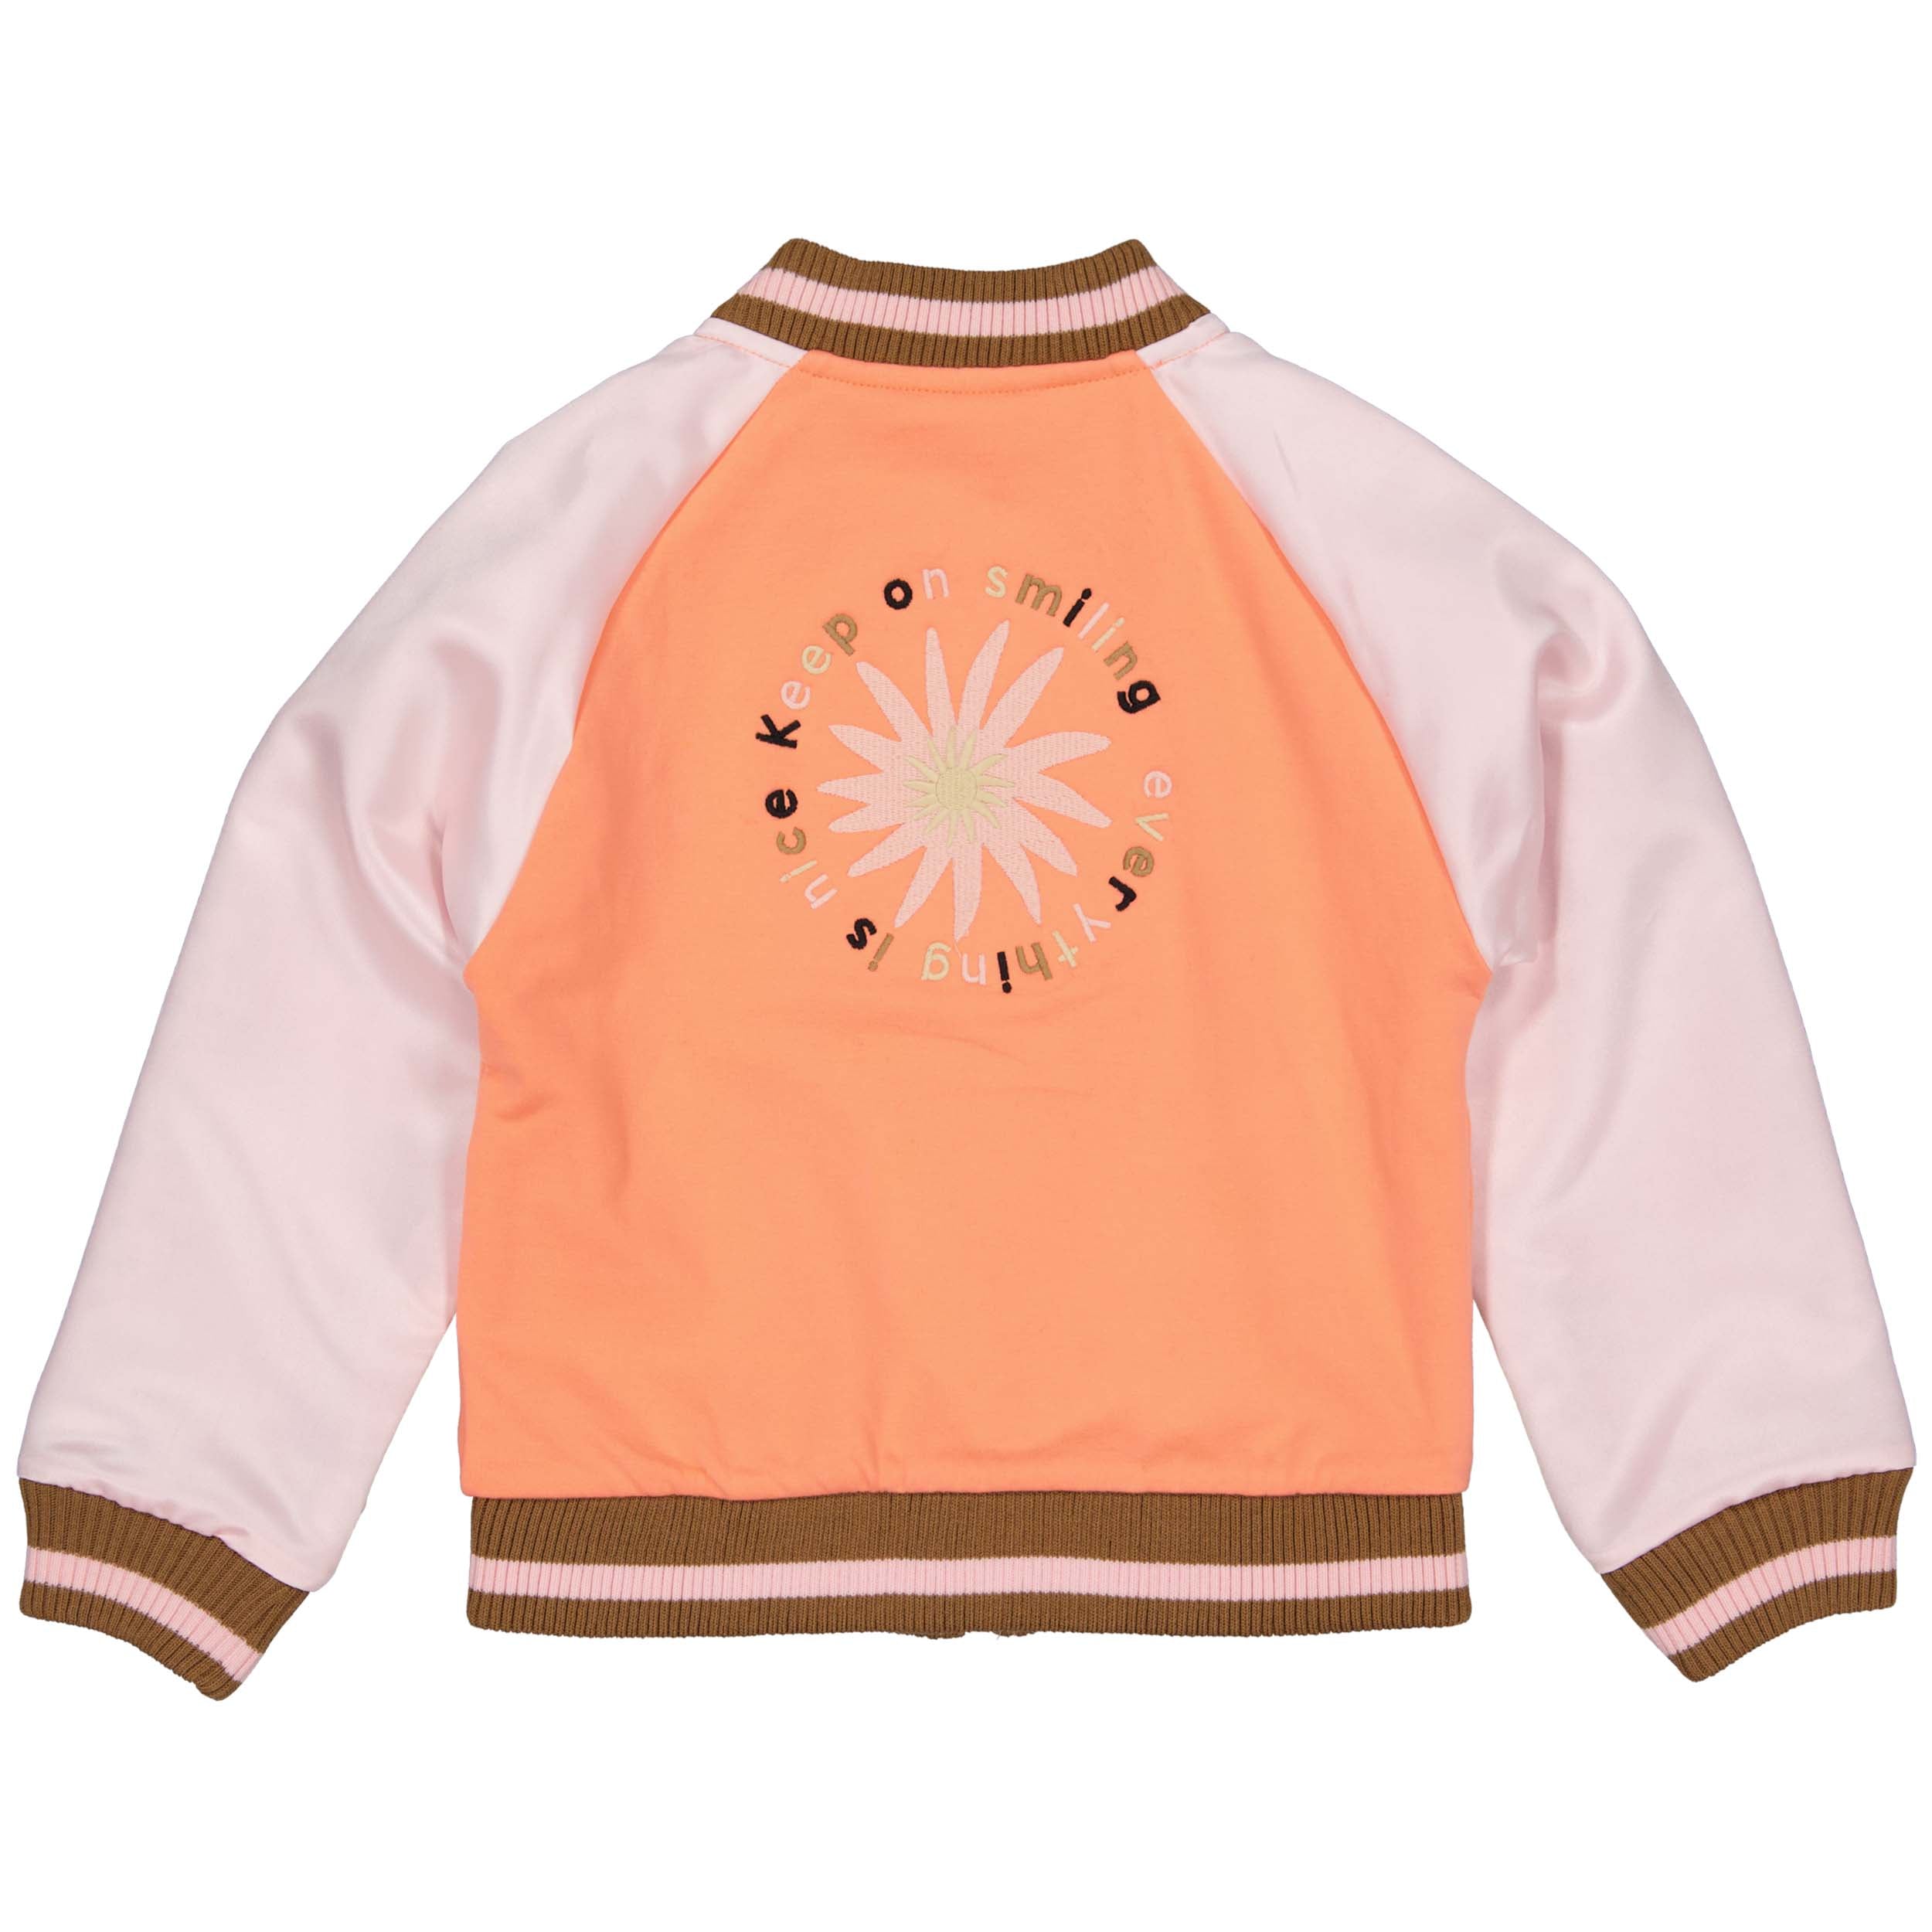 Meisjes Jacket AMIRAQW231 van Quapi in de kleur Coral Fushion in maat 134-140.